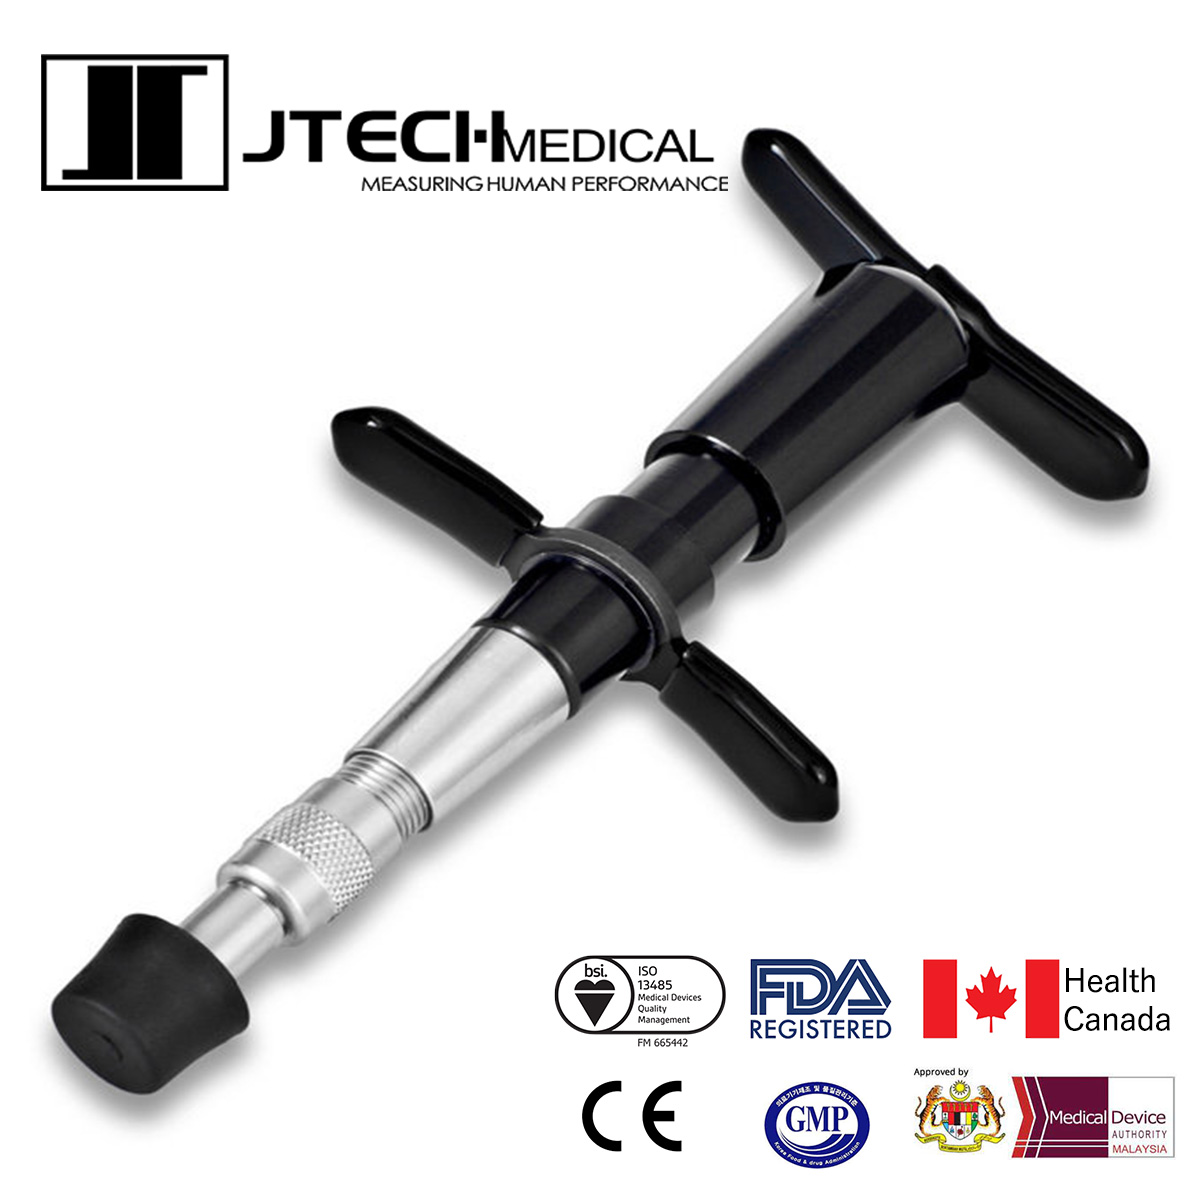 J-tech Medical アクティベーター アクチベーター カイロプラティックアジャスティングツール カイロプラクティック J-Tech CAT  Chiropractic Adjusting Tool スタンダードモデル 国内正規品 | Refurbished　Supplier